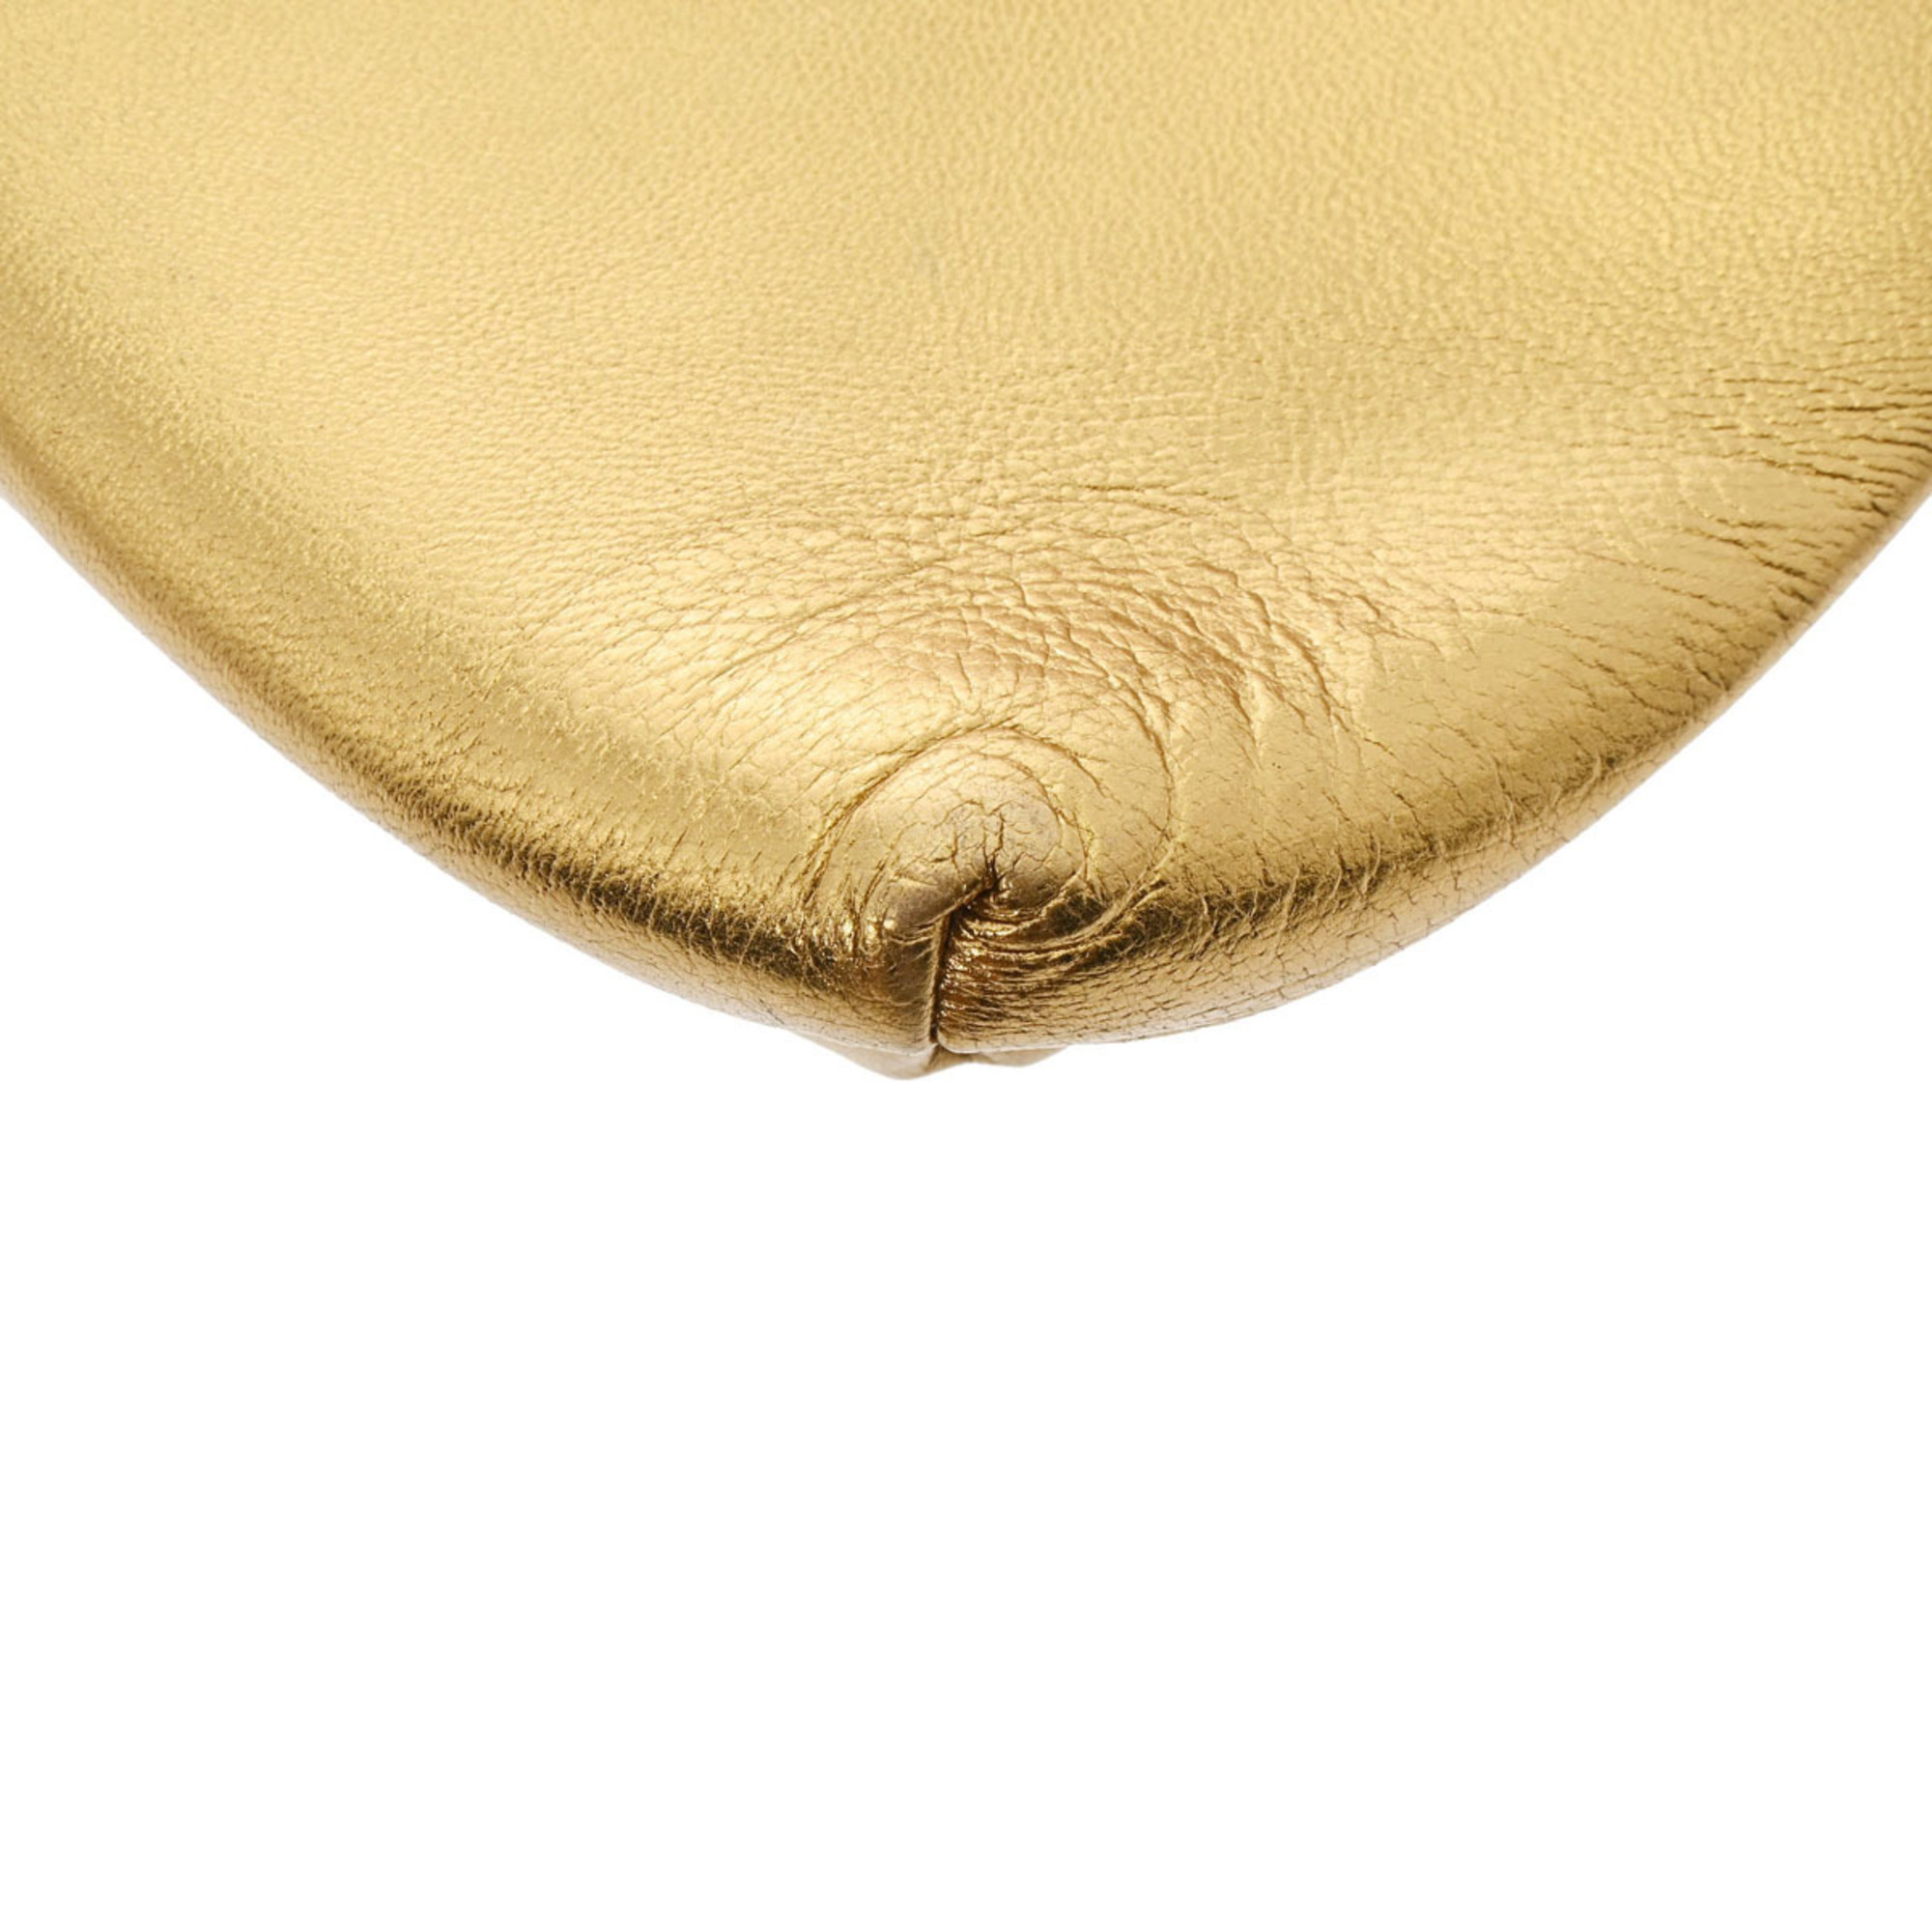 SALVATORE FERRAGAMO Ferragamo Gancini Gold Women's Leather Pouch